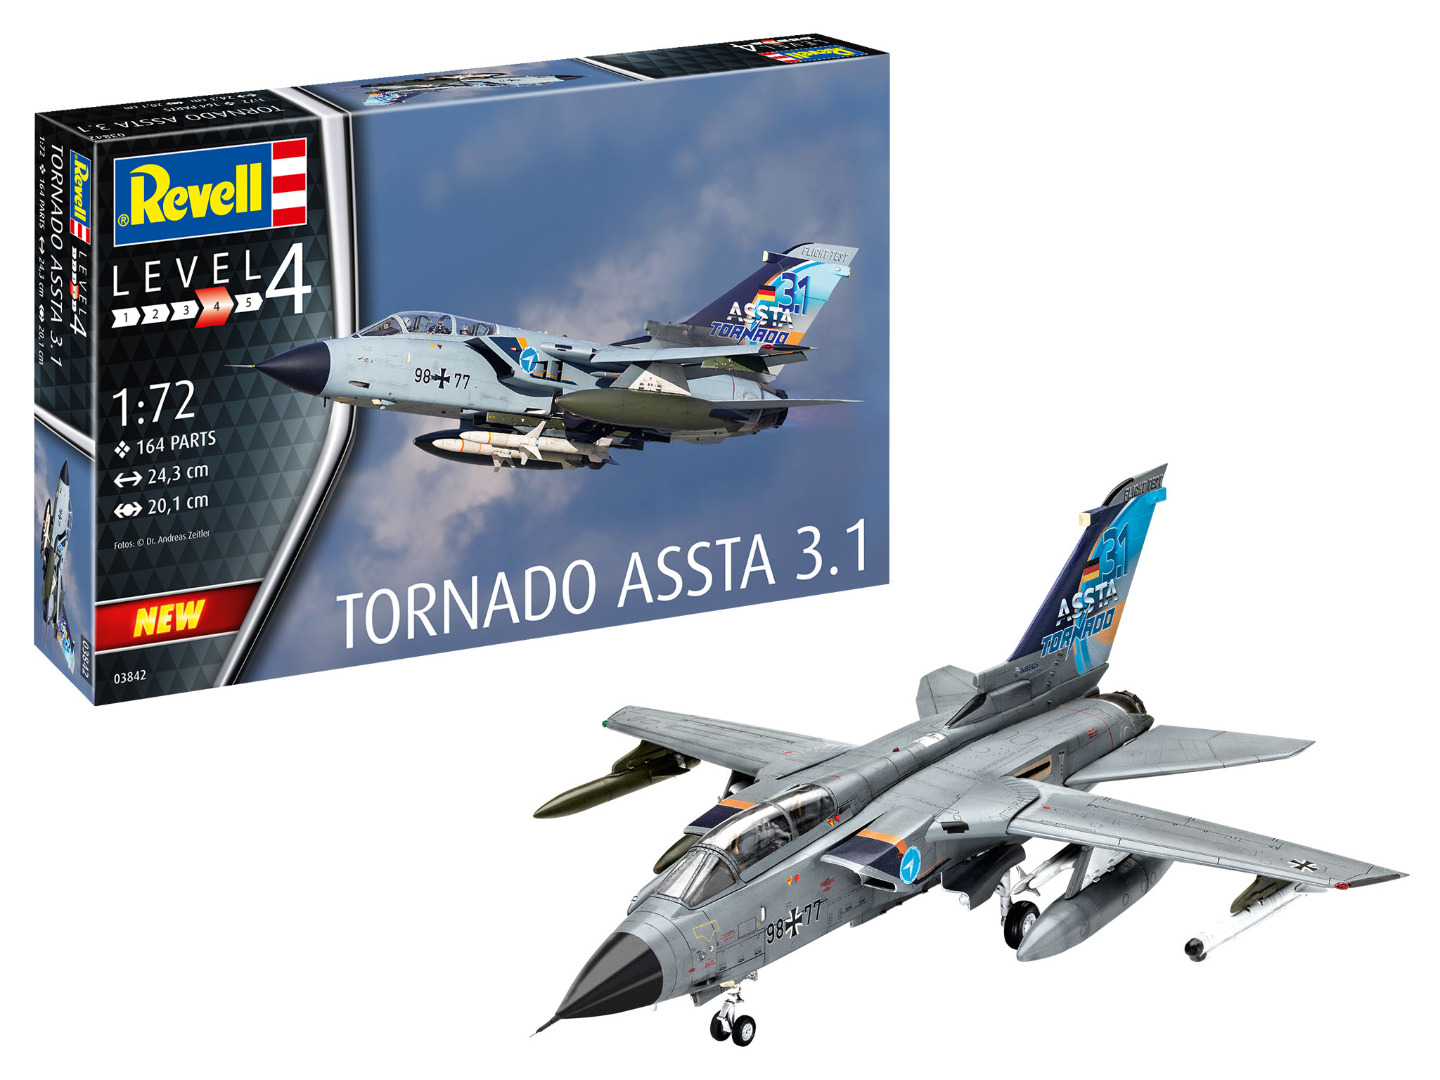 Revell Model Kit Tornado ASSTA 3.1 Scale 1:72